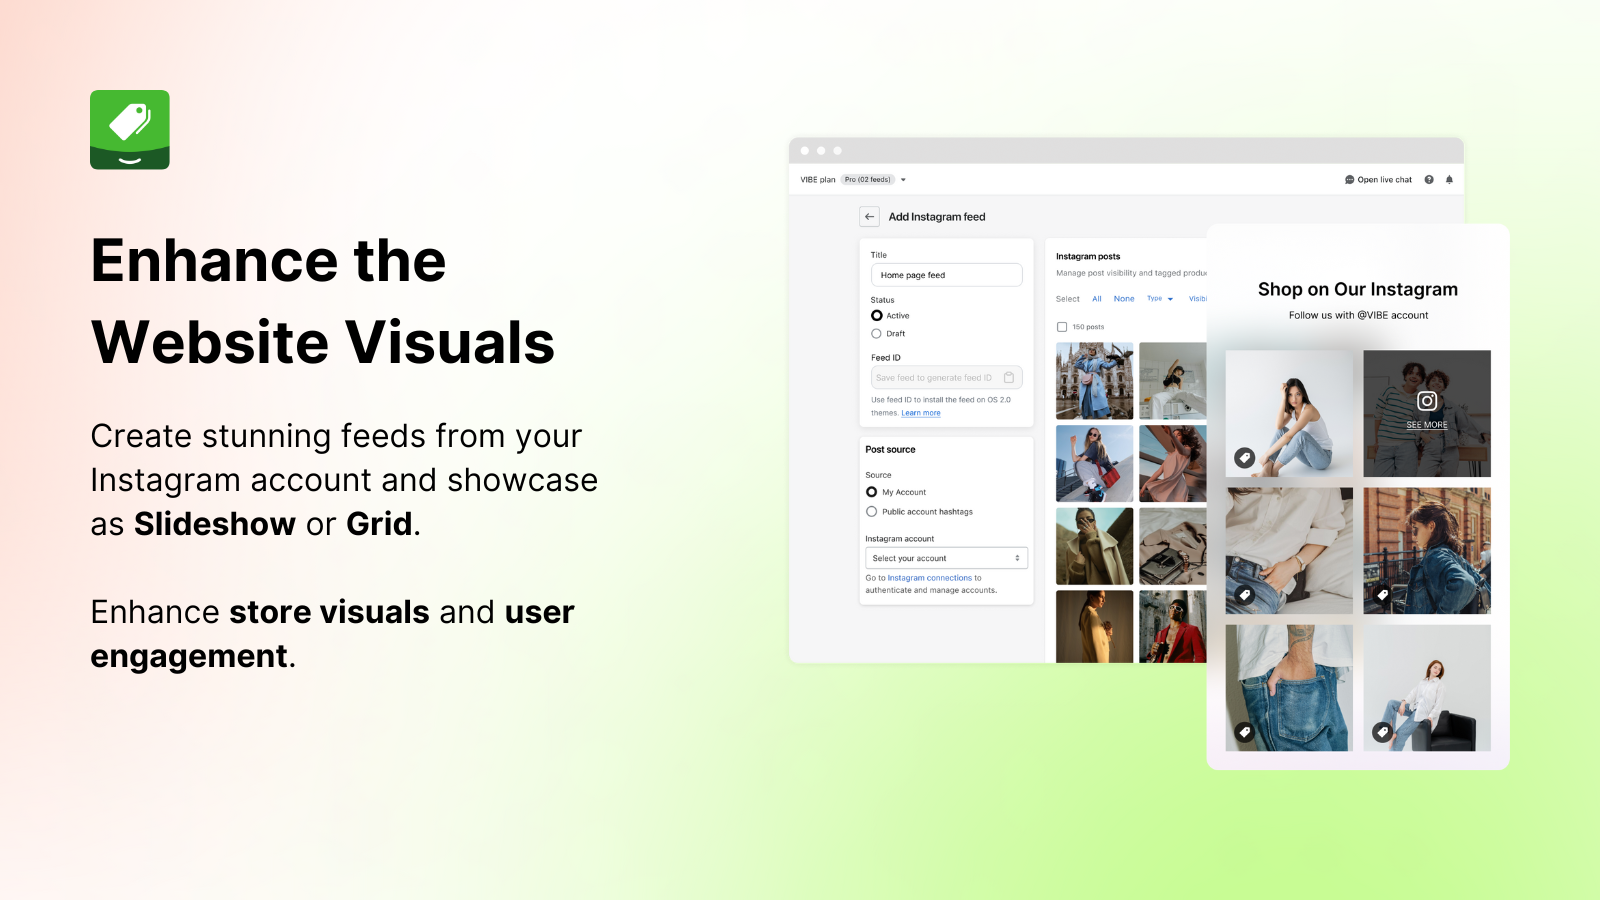 vibe instagram信息流有助于增强网站视觉效果